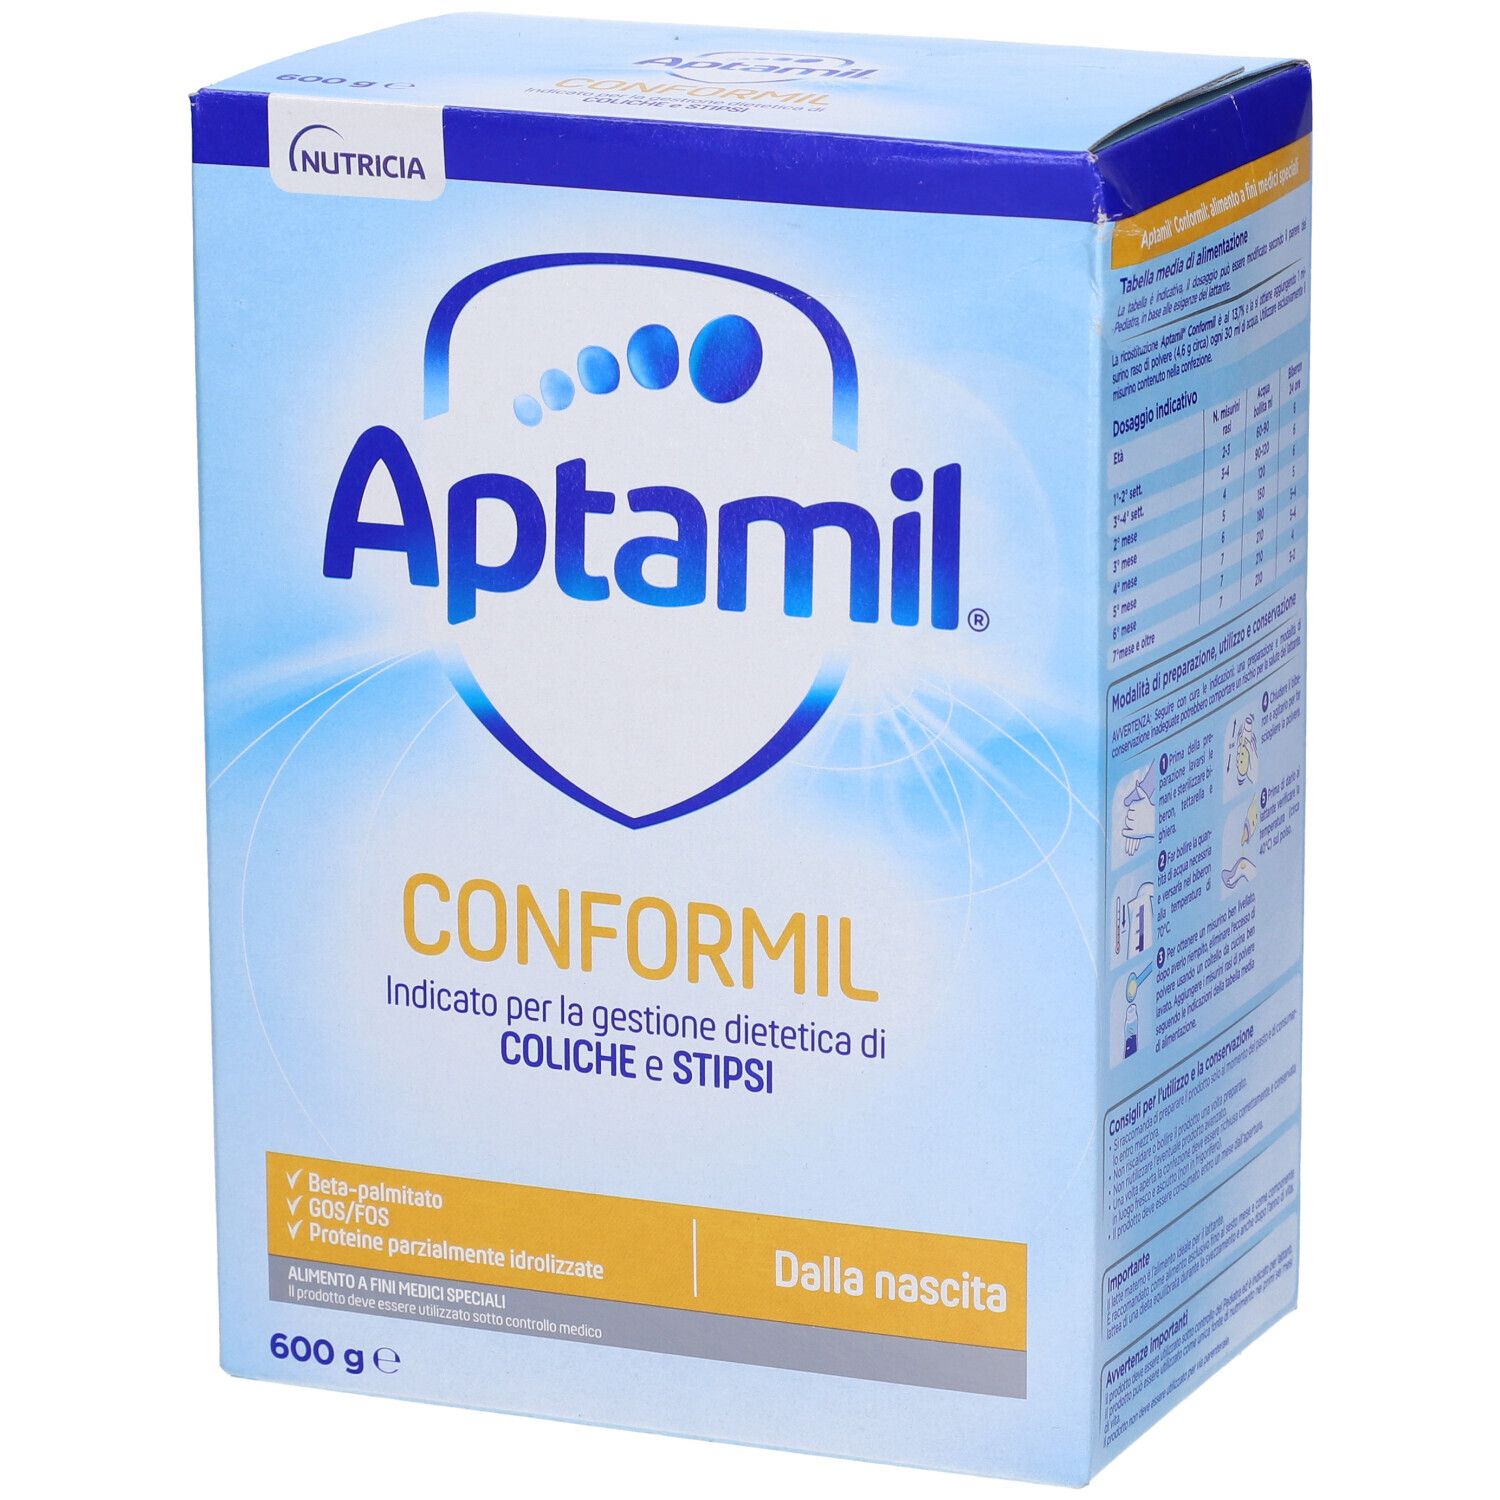 Image of Aptamil Conformil